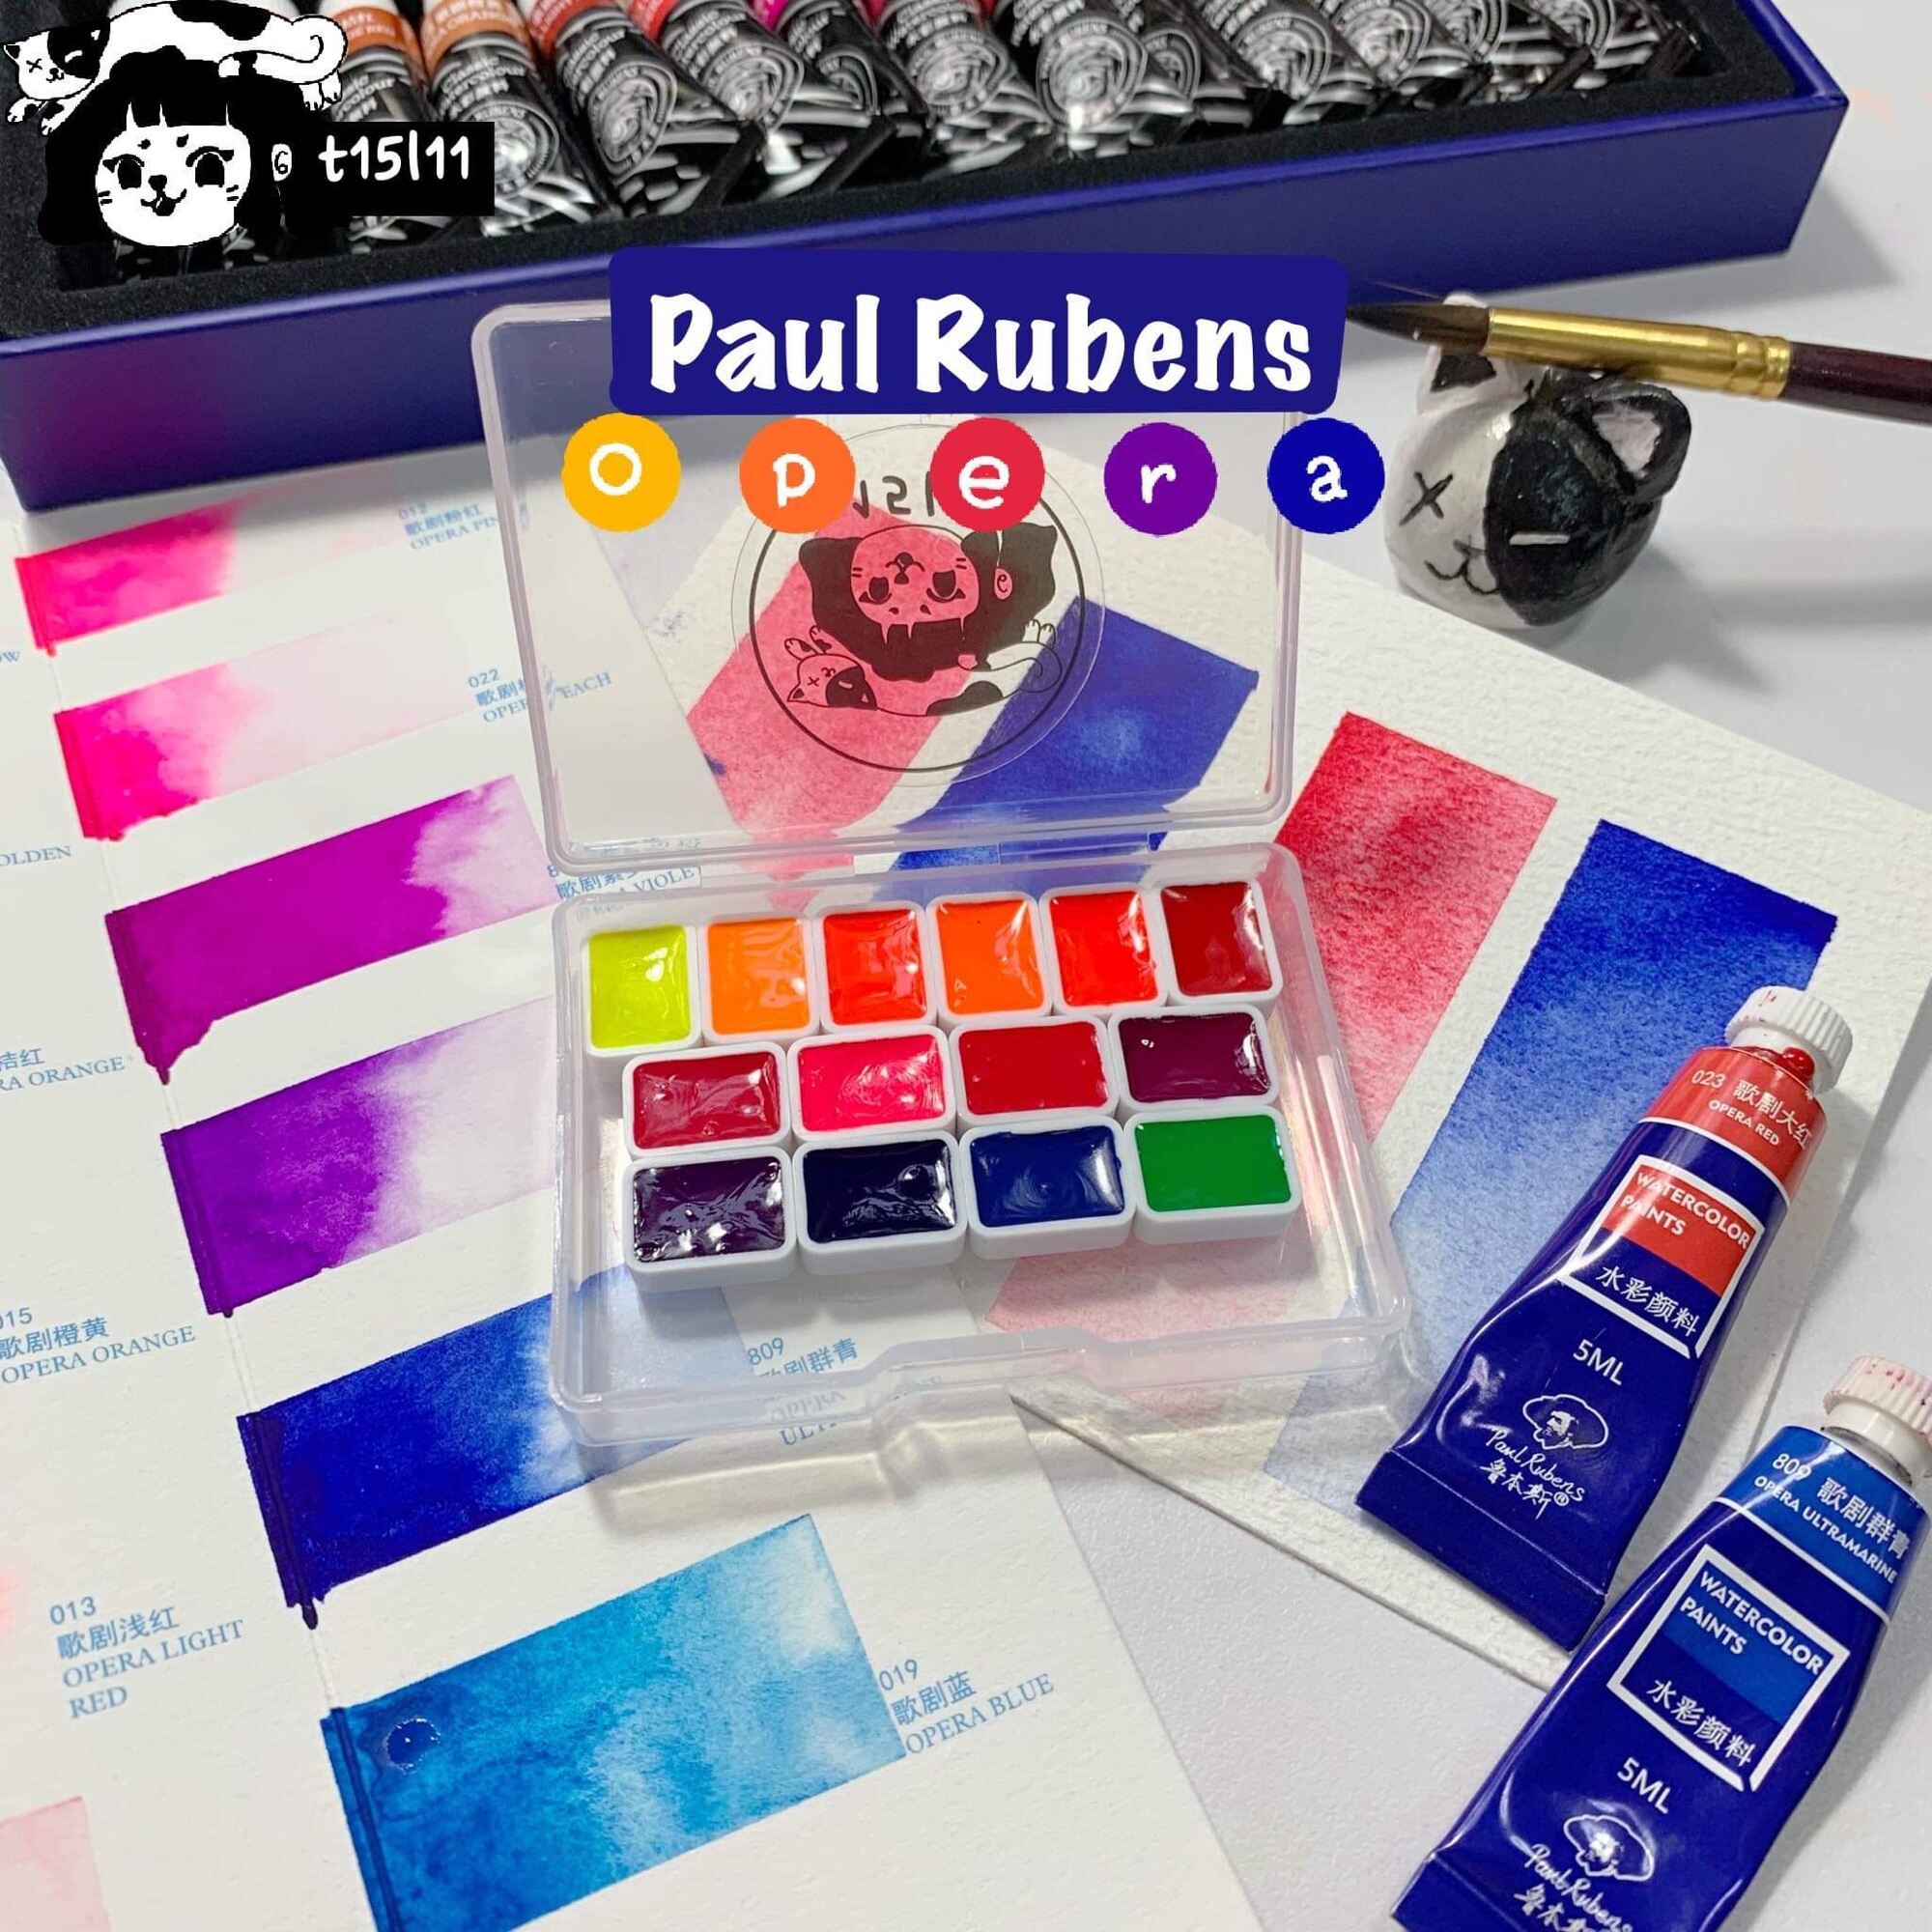 t15l11 Paul Rubens Opera Pocket 14 màu 0.6ml tone Neon